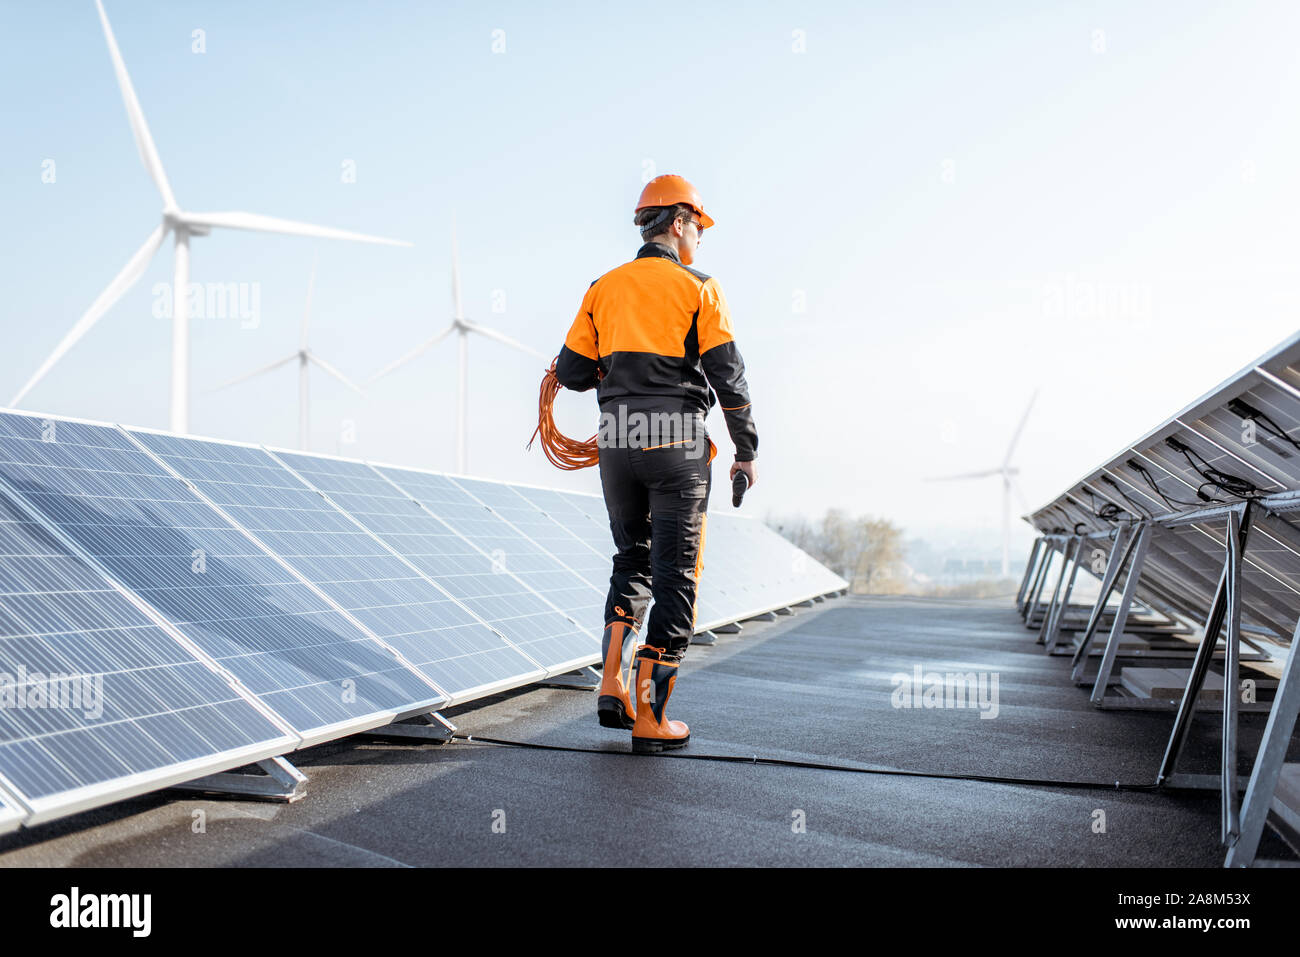 Travailleur bien équipé en vêtements orange de protection et d'examiner la marche des panneaux solaires sur un toit photovoltaïque usine. Concept de l'entretien et l'installation de stations solaires Banque D'Images